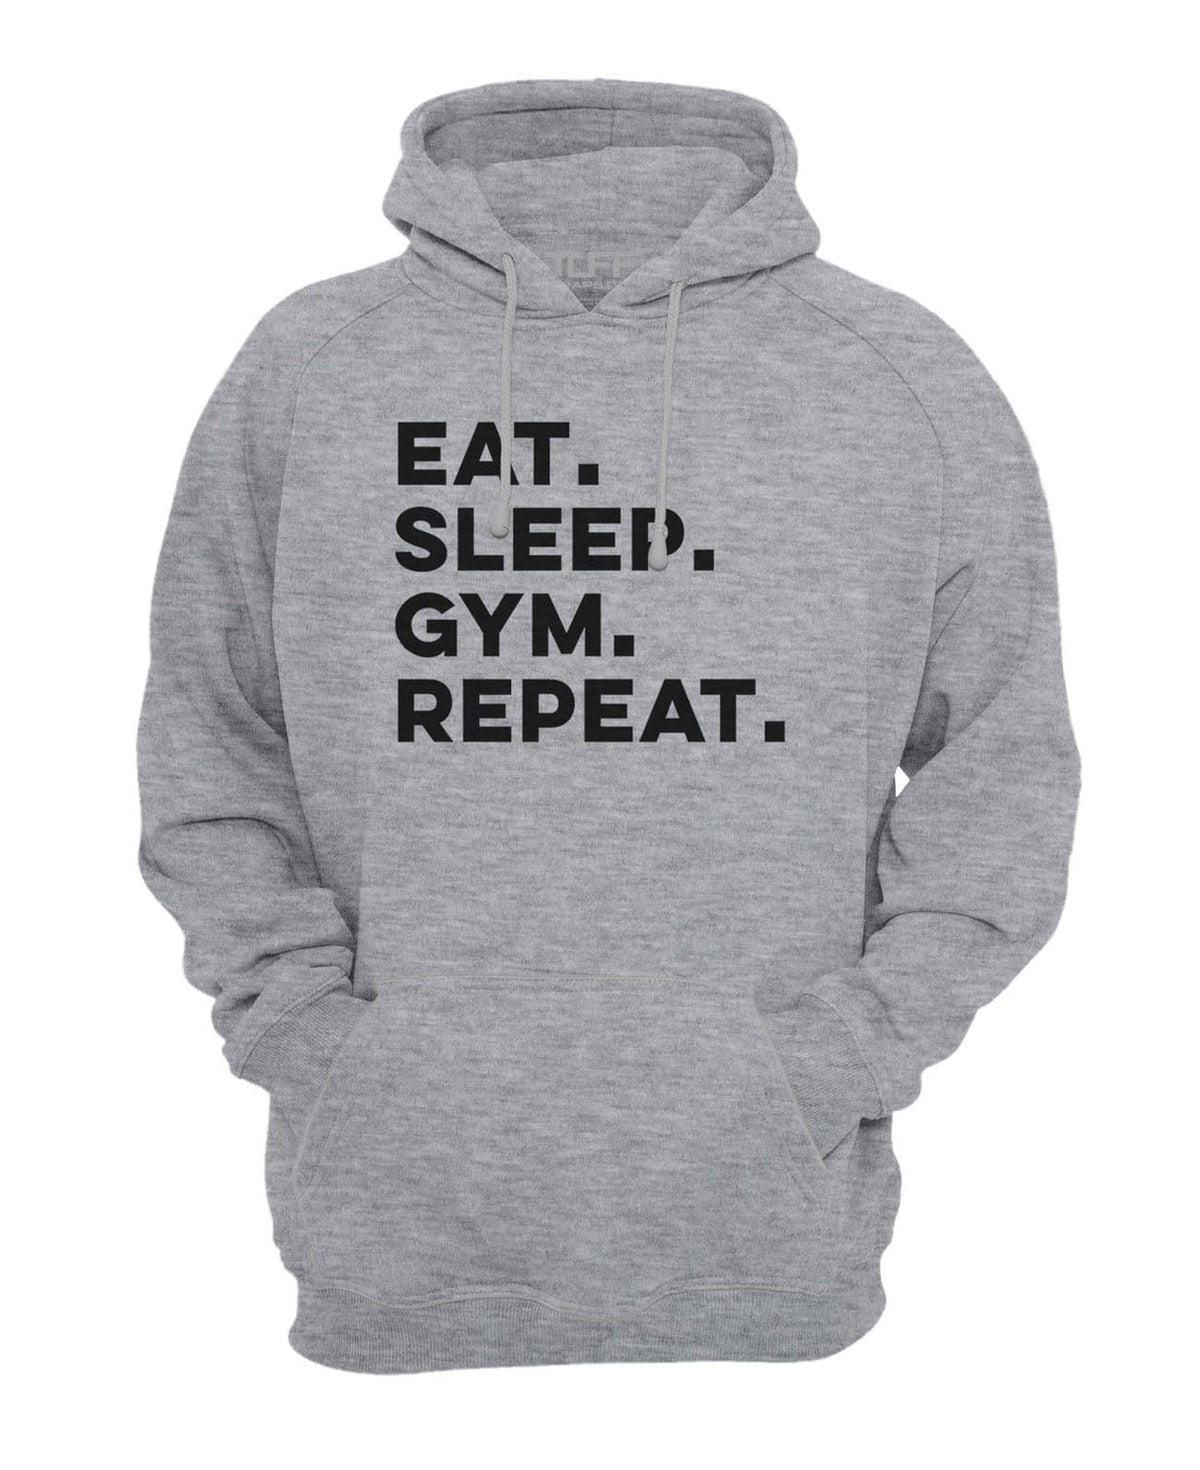 Eat. Sleep. Gym. Repeat. Hooded Sweatshirt XS / Gray TuffWraps.com